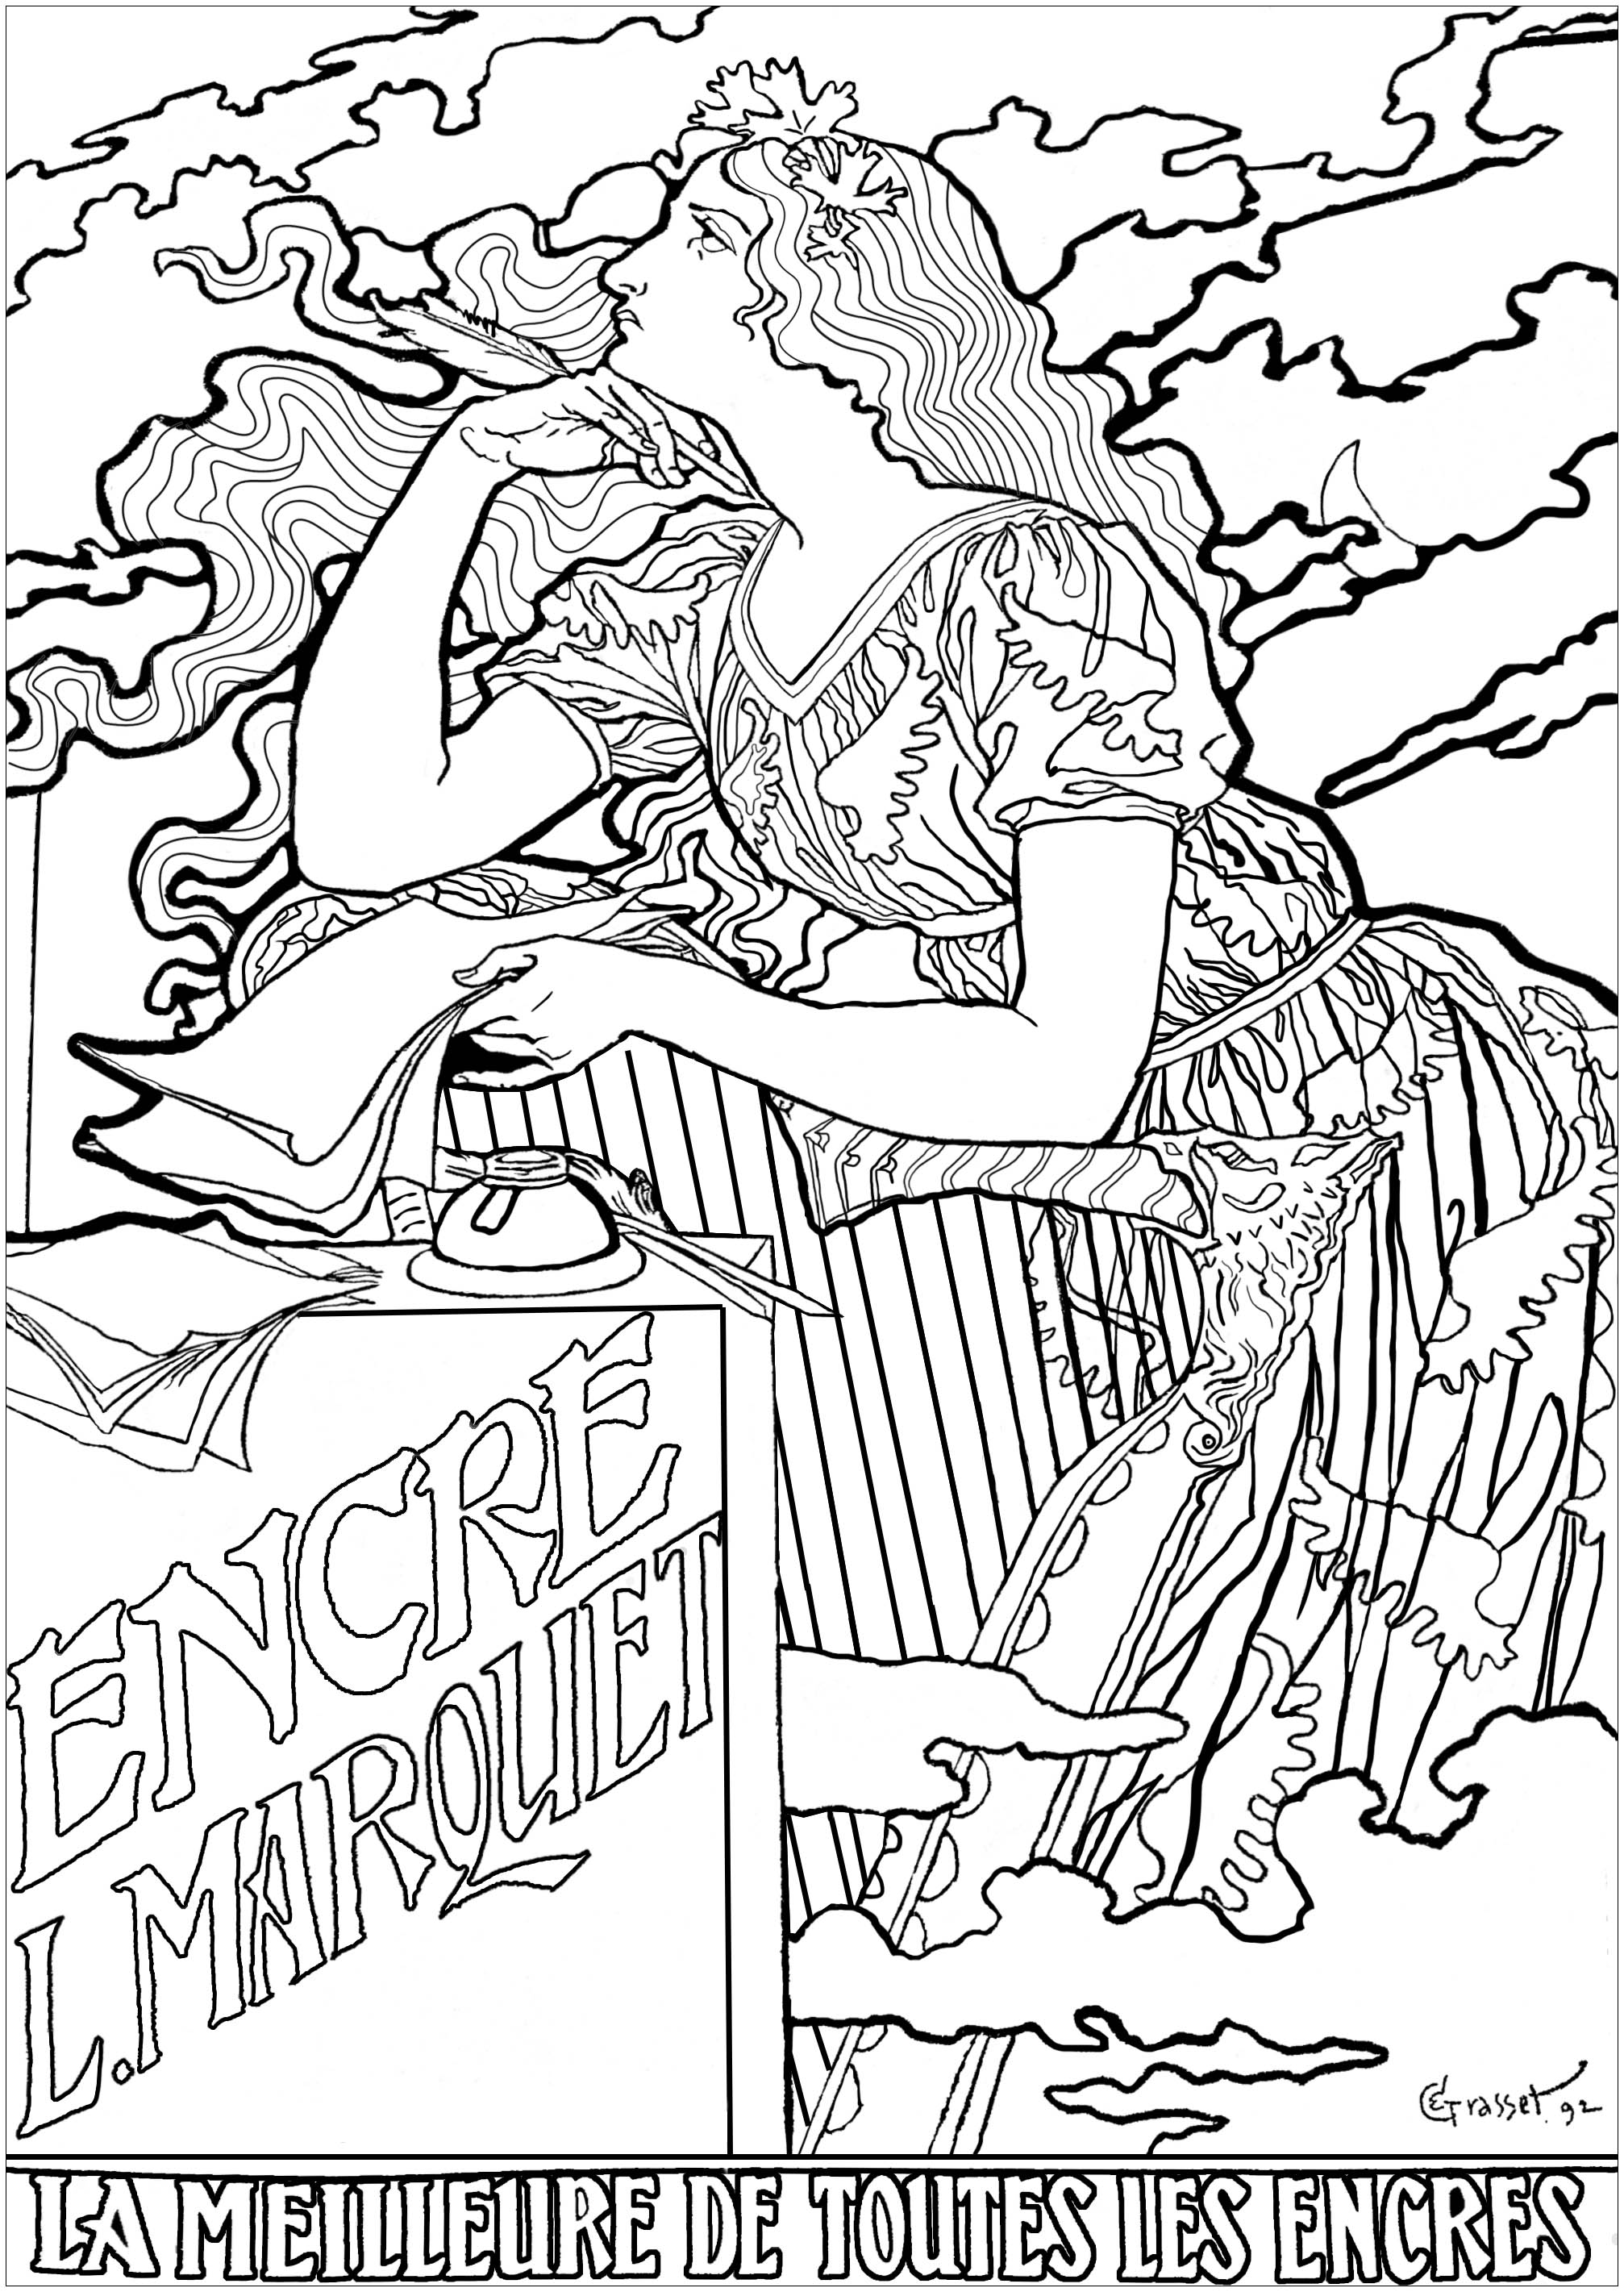 Eugène Grasset: Cartaz para as tintas L. Marquet. Esta página para colorir é baseada num cartaz publicitário de 1892, criado por Eugène Grasset para uma marca de tinta e muito representativo do estilo Arte Nova, Artista : Olivier